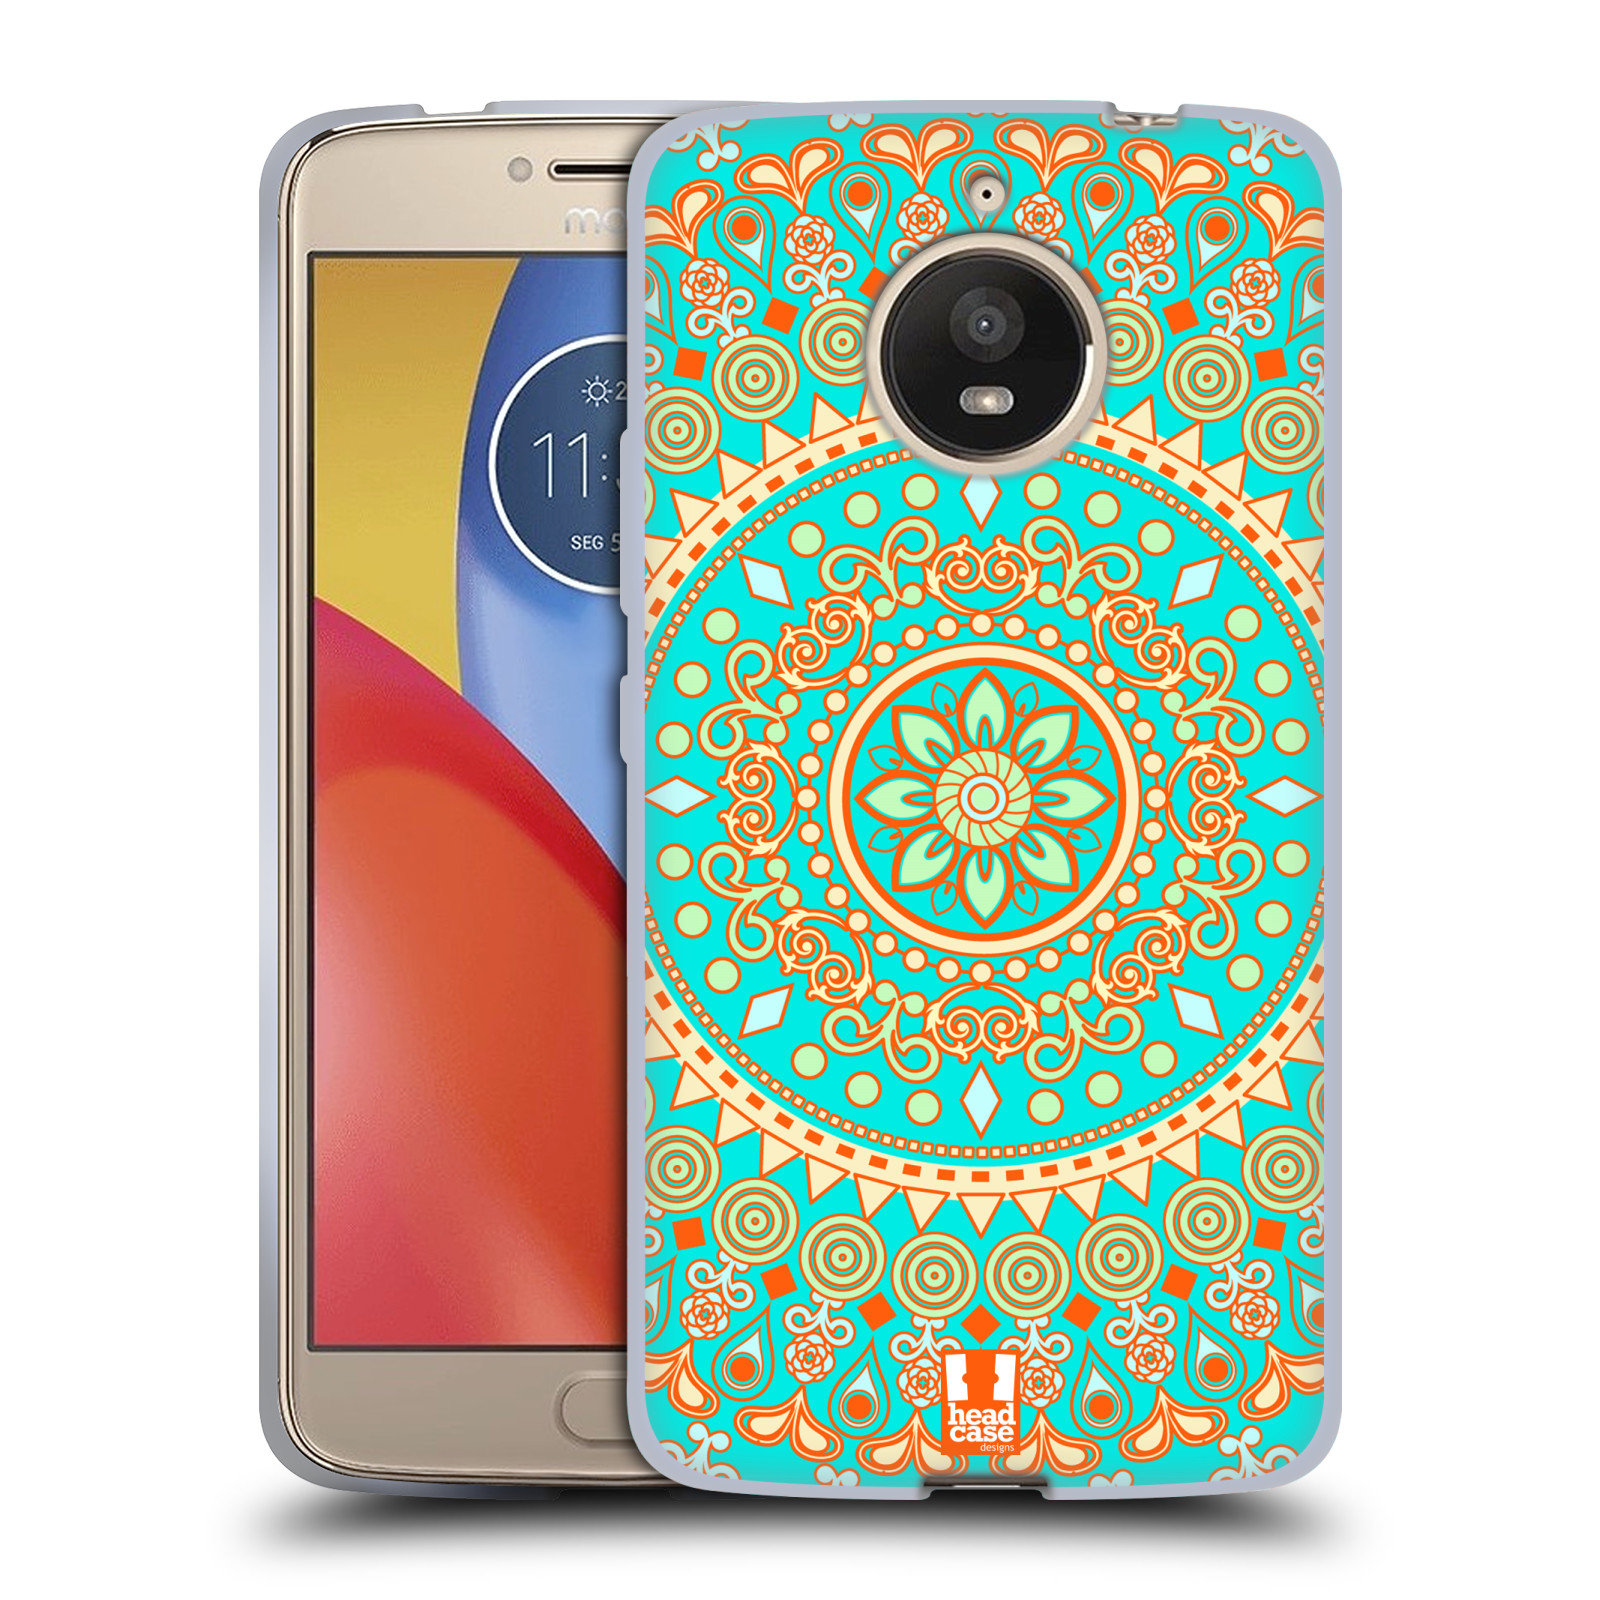 HEAD CASE silikonový obal na mobil Lenovo Moto E4 PLUS vzor Indie Mandala slunce barevný motiv TYRKYSOVÁ, ZELENÁ